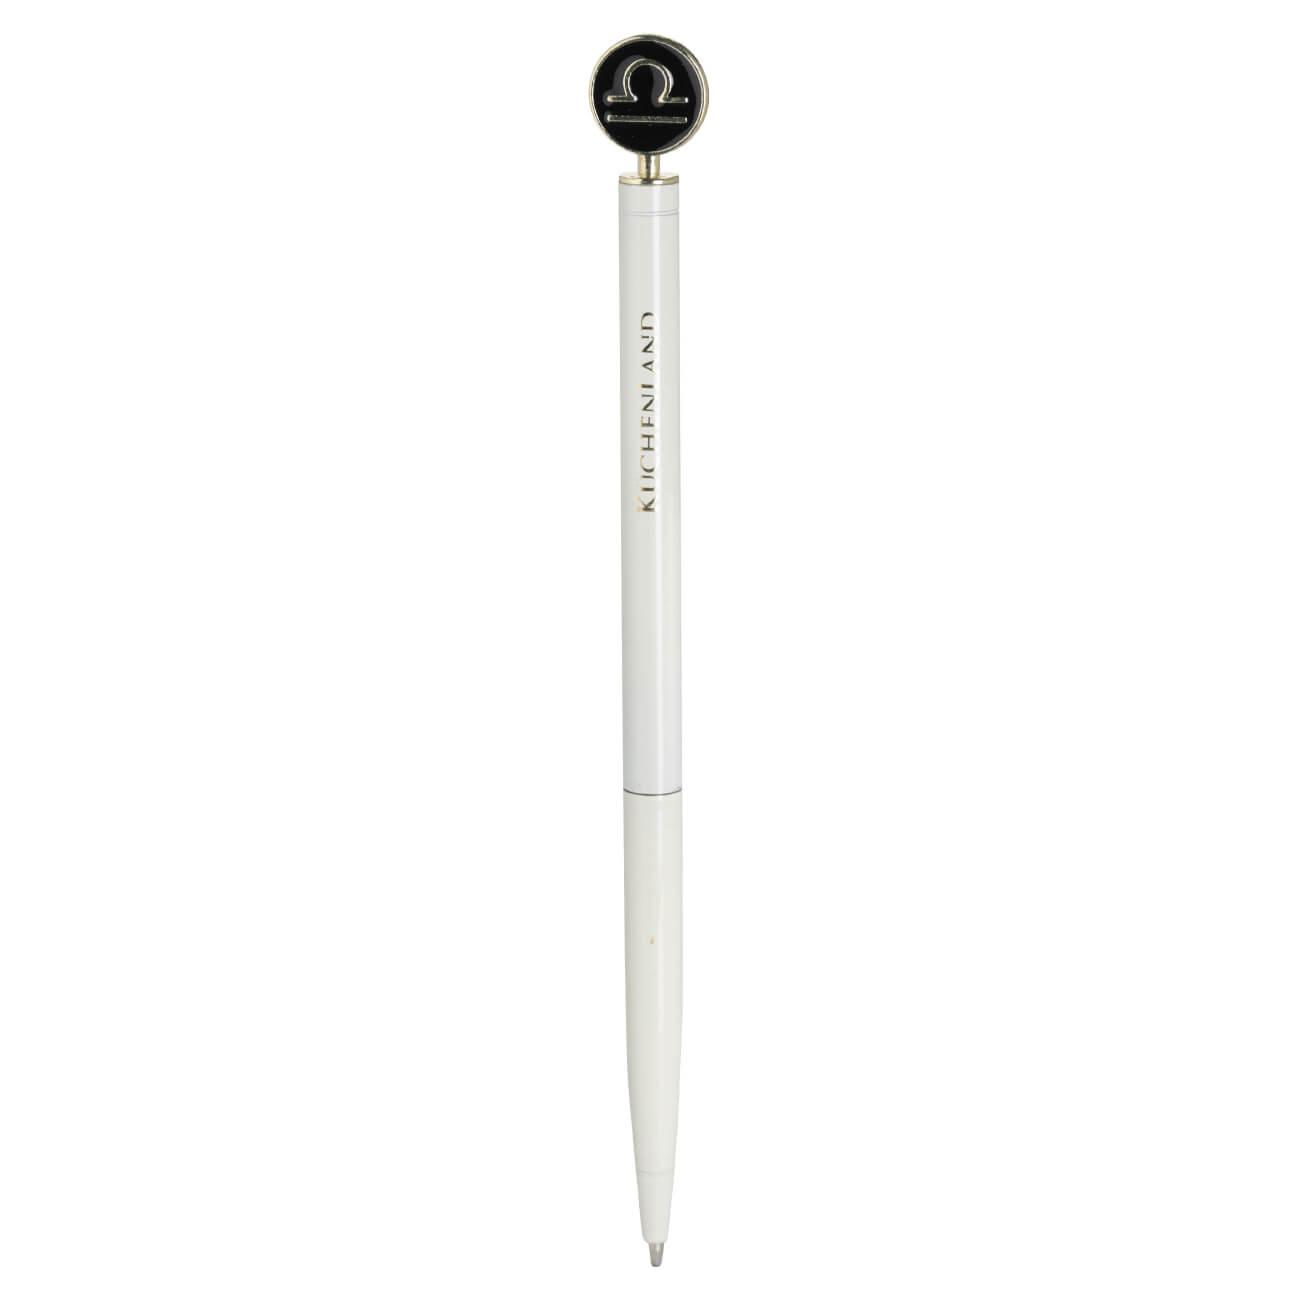 Ручка шариковая, 15 см, с фигуркой, сталь, молочно-золотистая, Весы, Zodiac ручка подарочная шариковая в пластиковом футляре поворотная